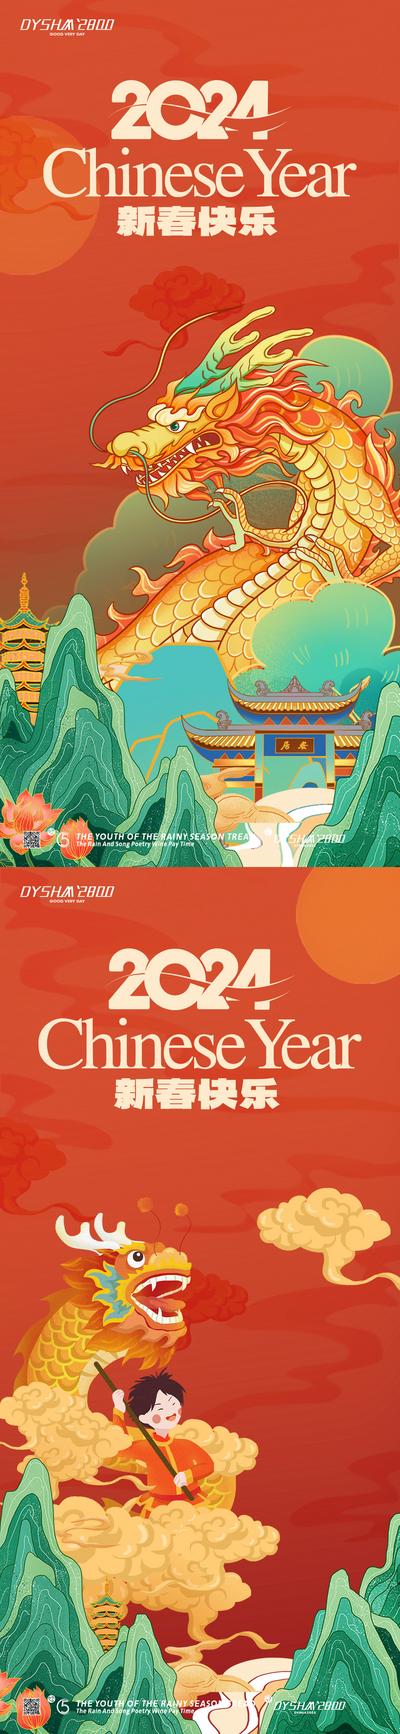 南门网 广告 海报 新年 元旦 春节 龙 2024 龙年 系列 节日